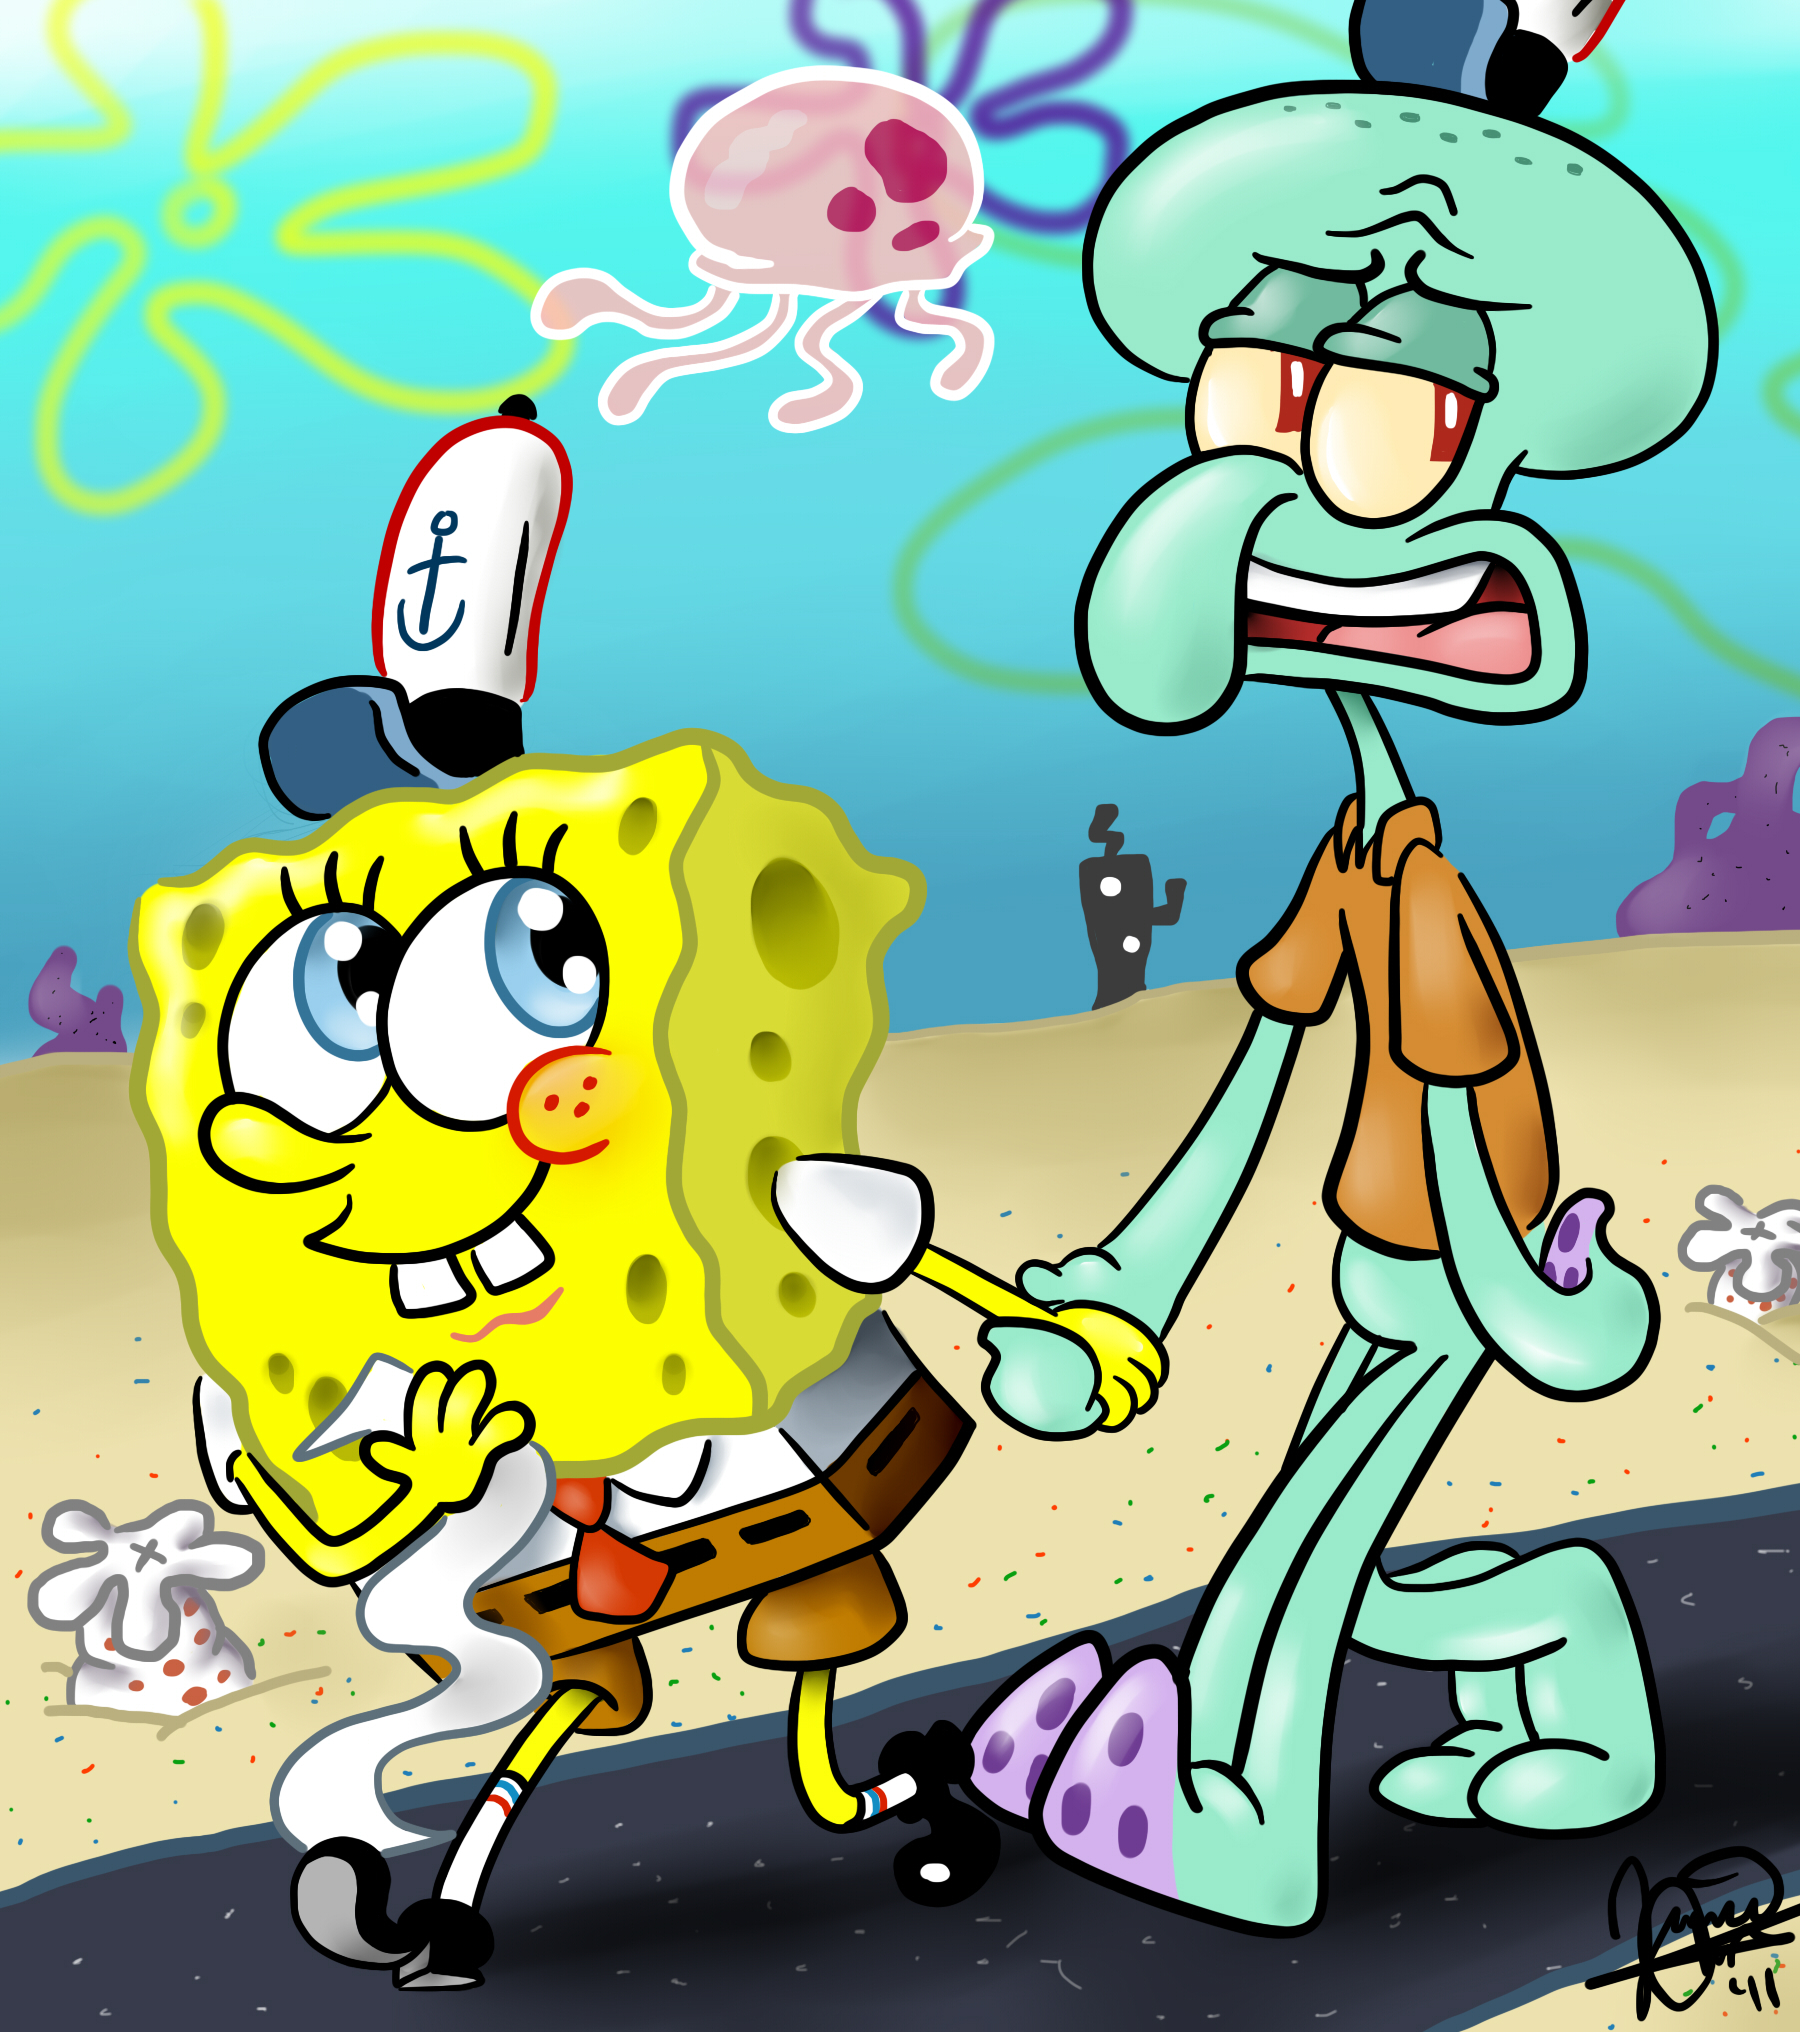 My Favorite Artis Kumpulan Gambar Spongebob Lucu Dan Keren